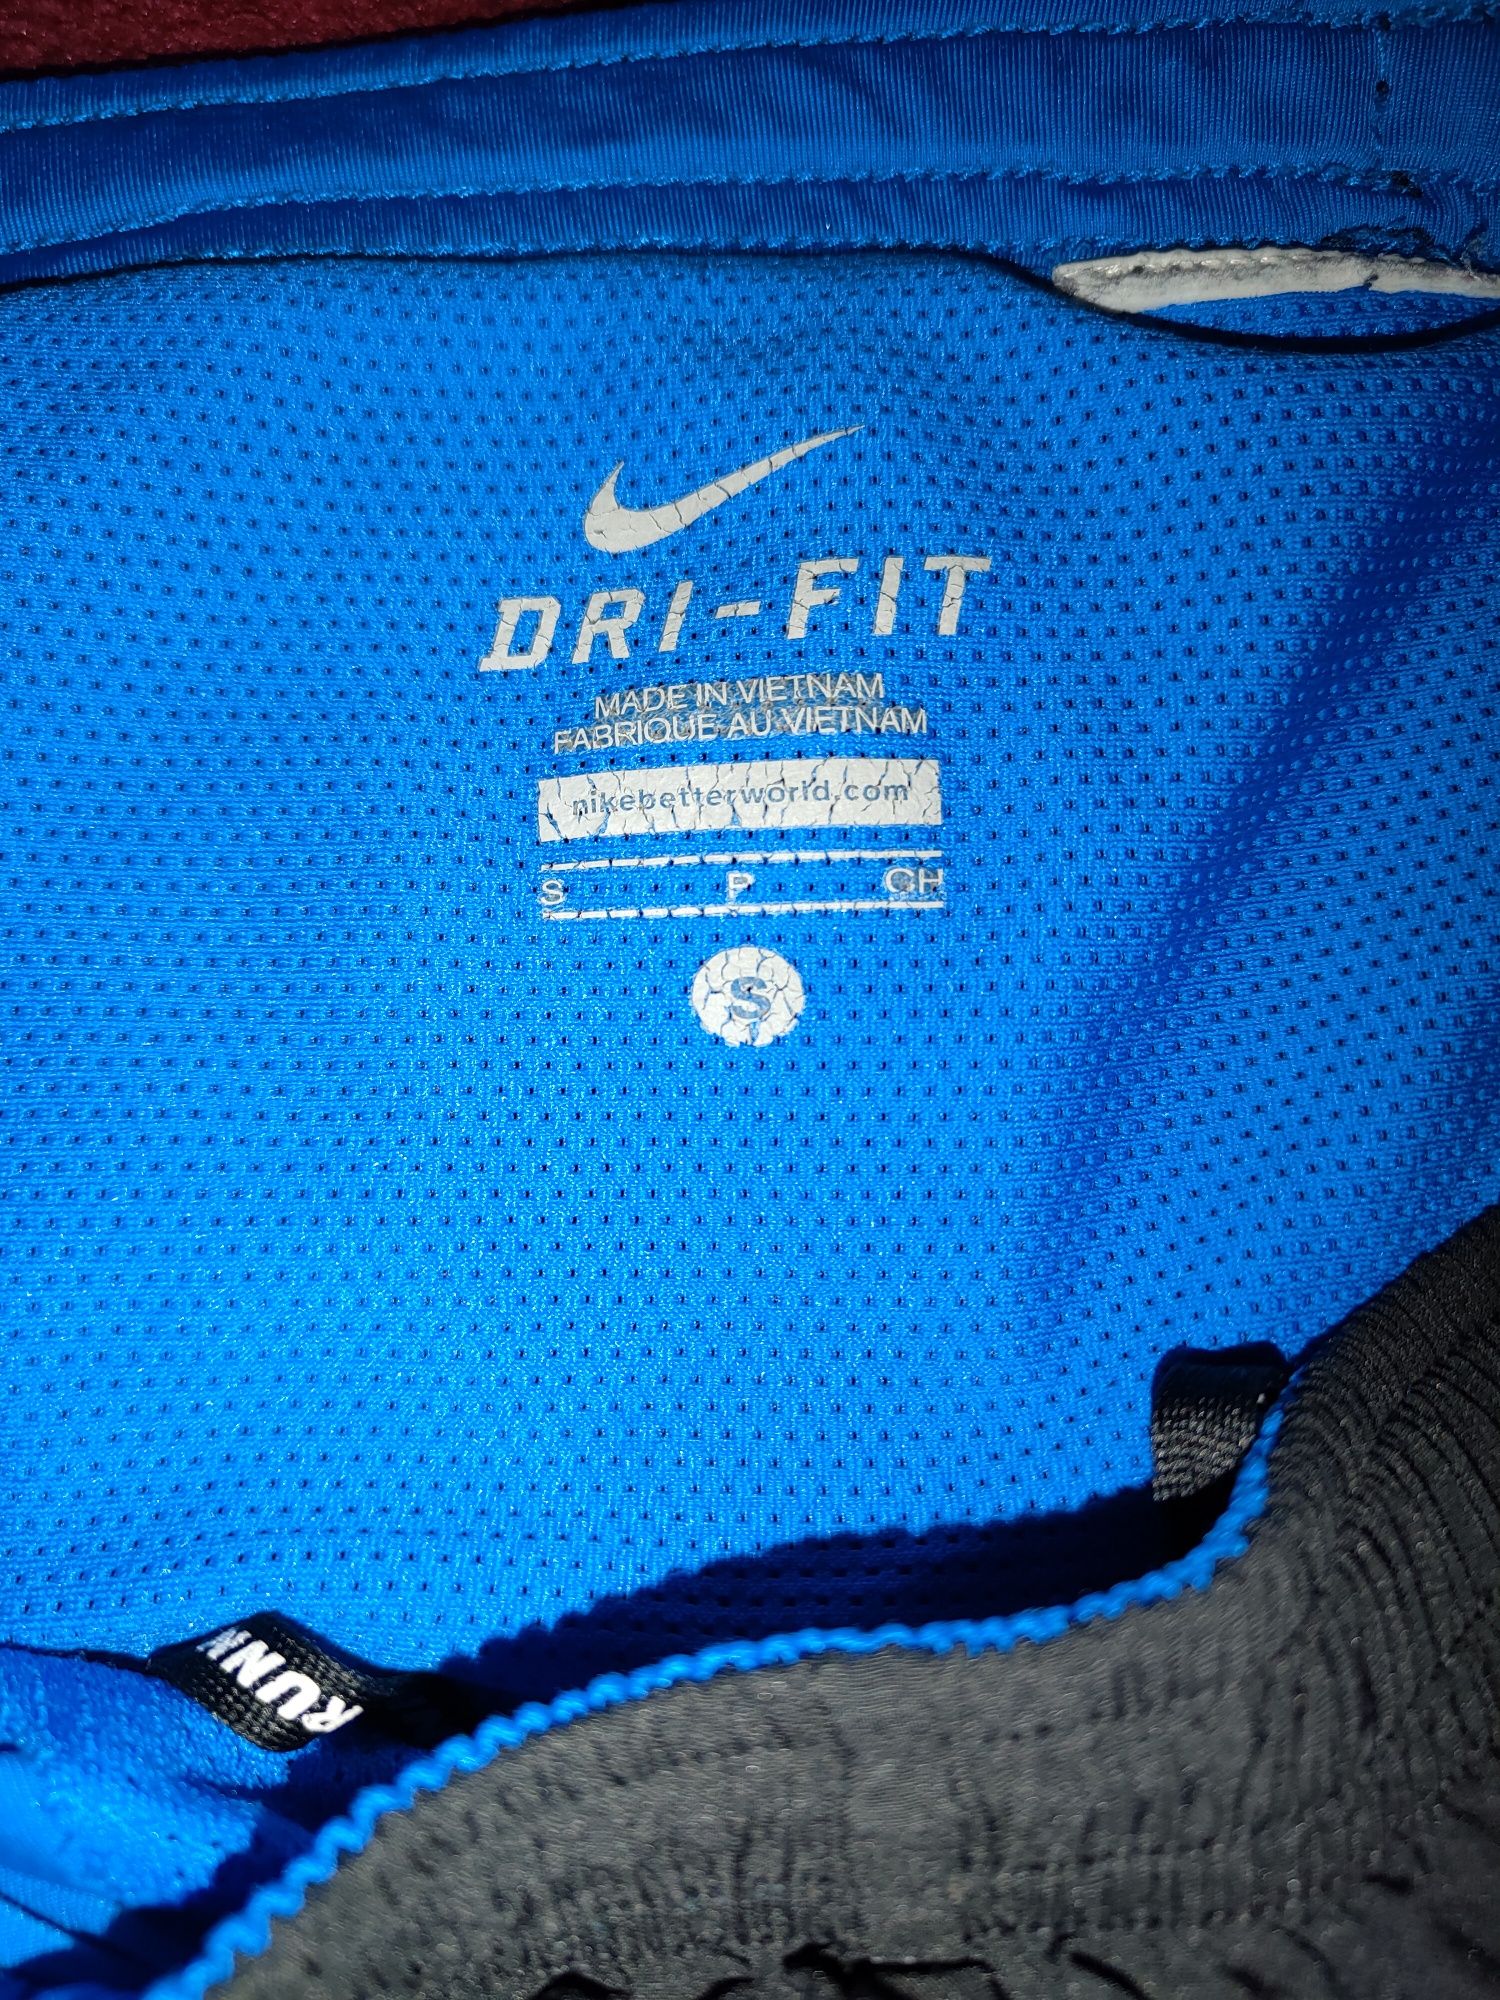 Шорты Nike Dri fit оригинал